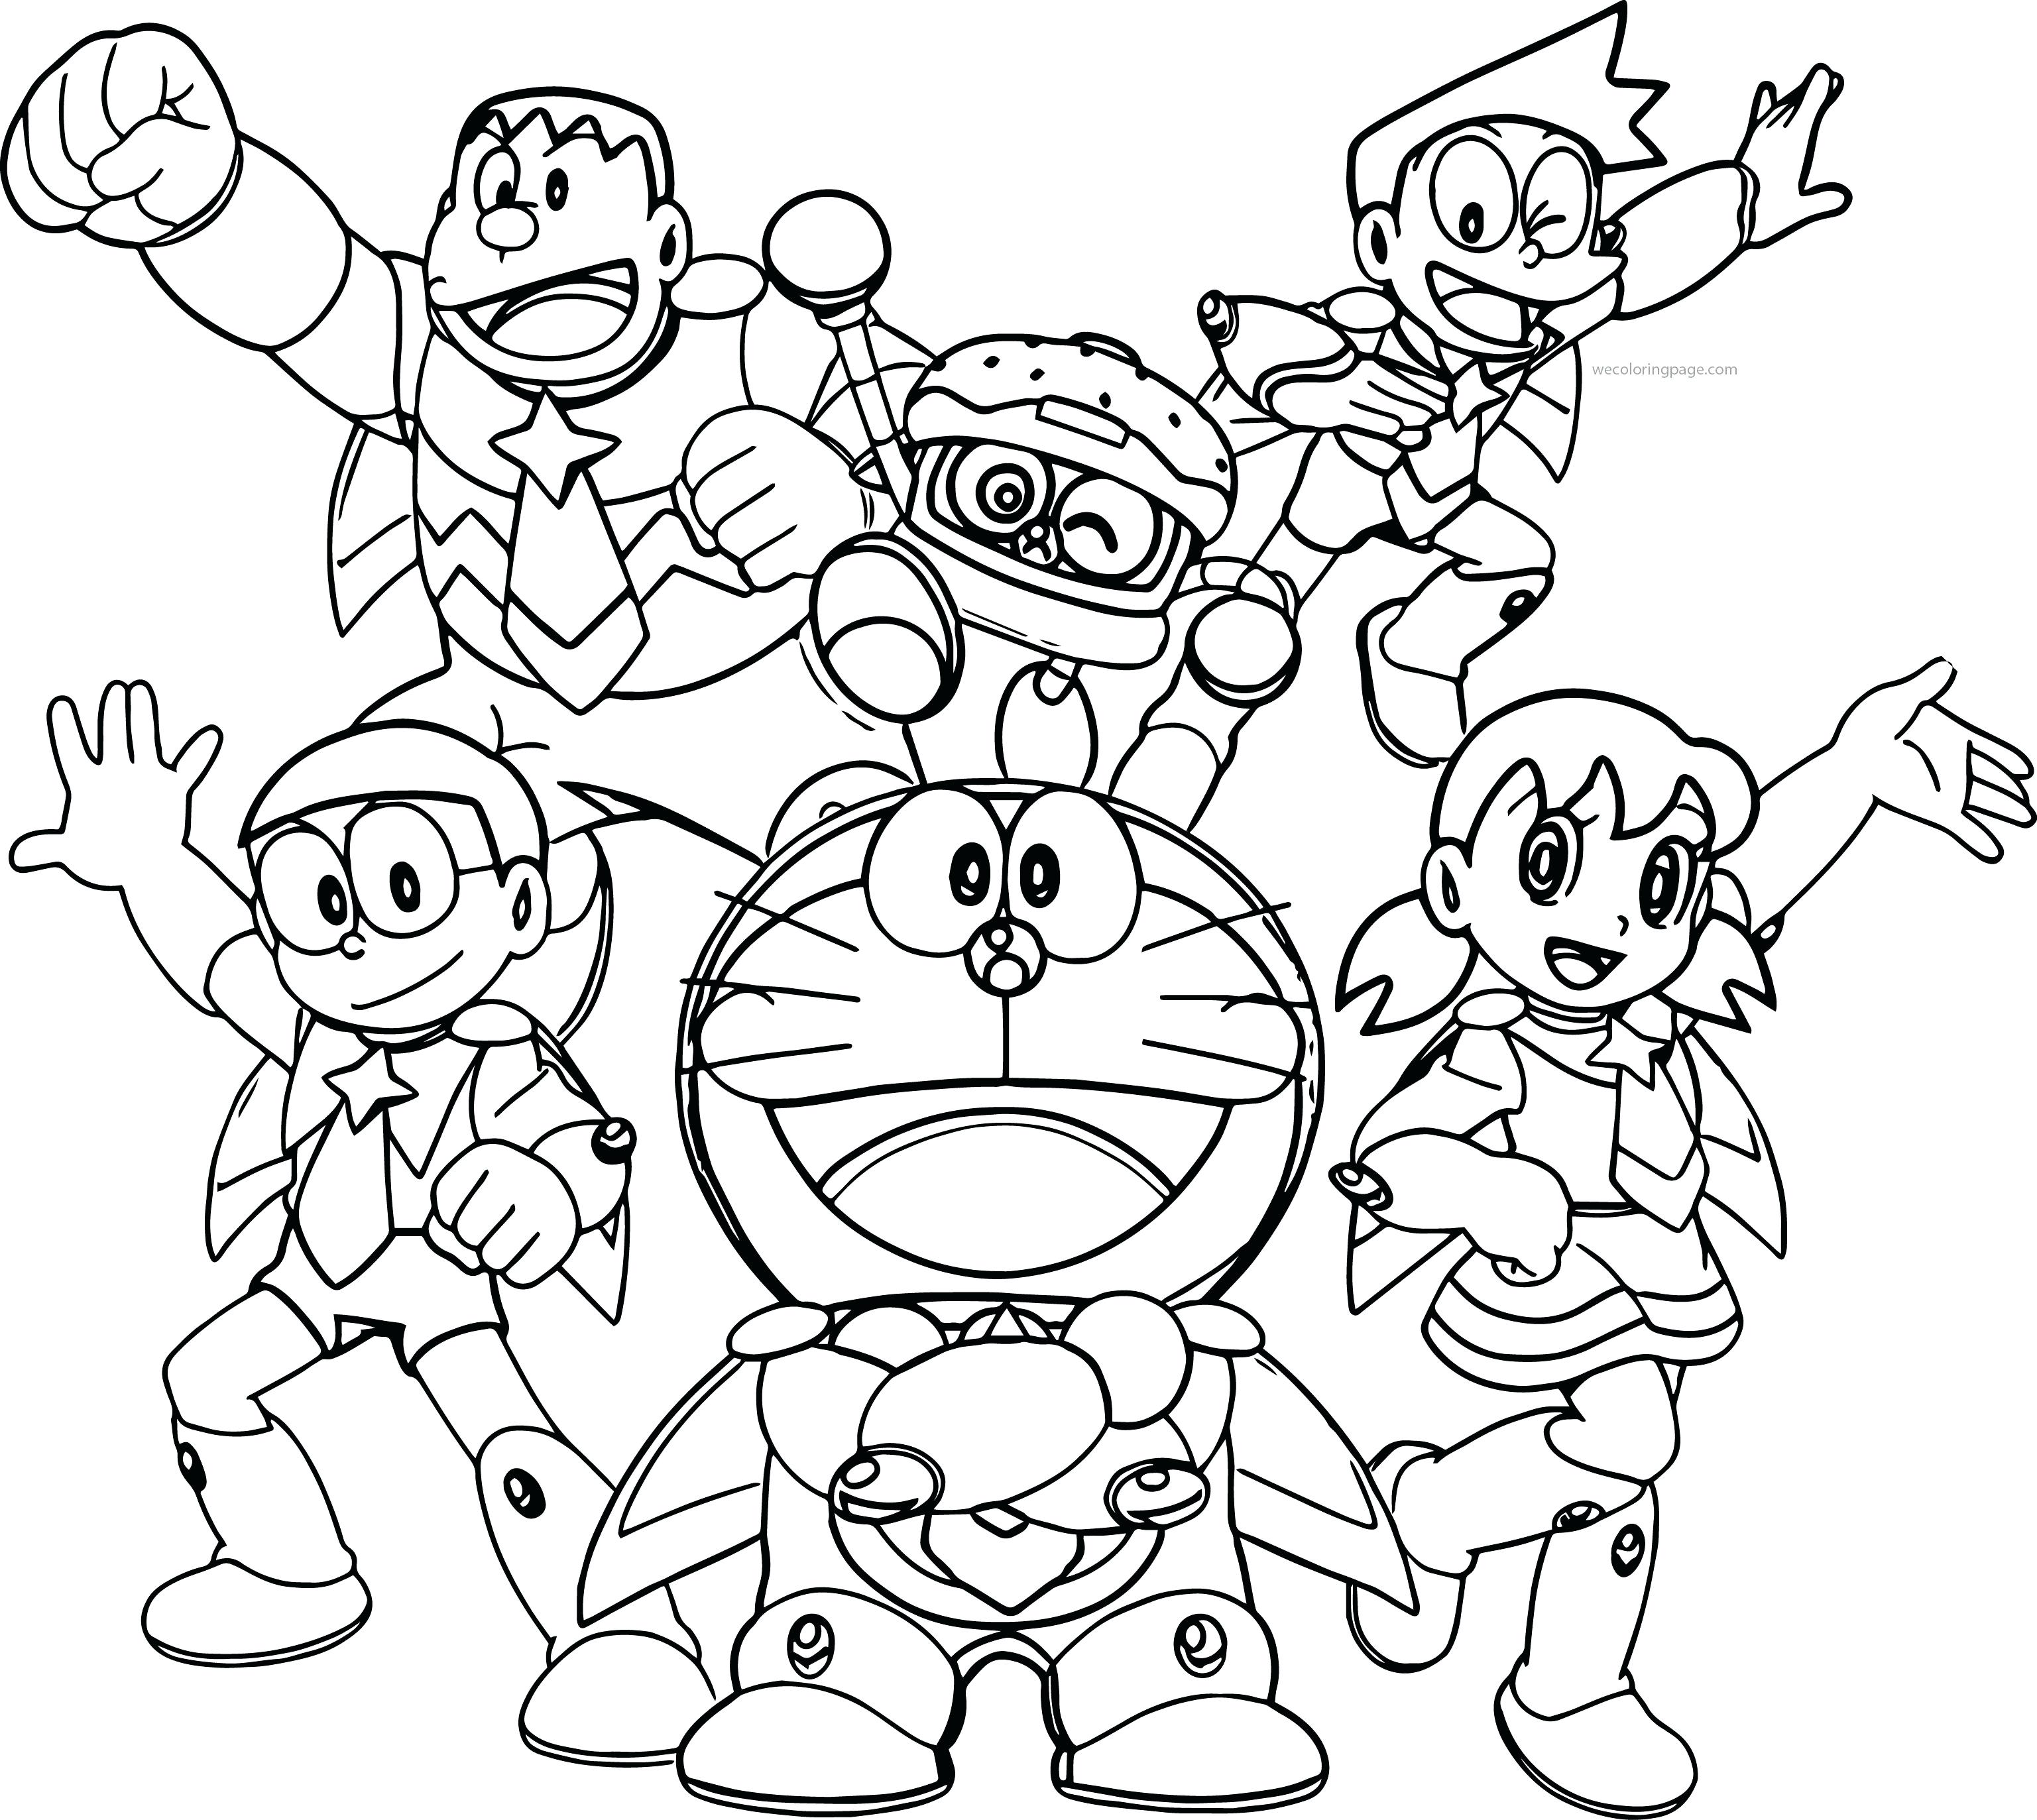 Tranh tô màu Doraemon và bạn bè